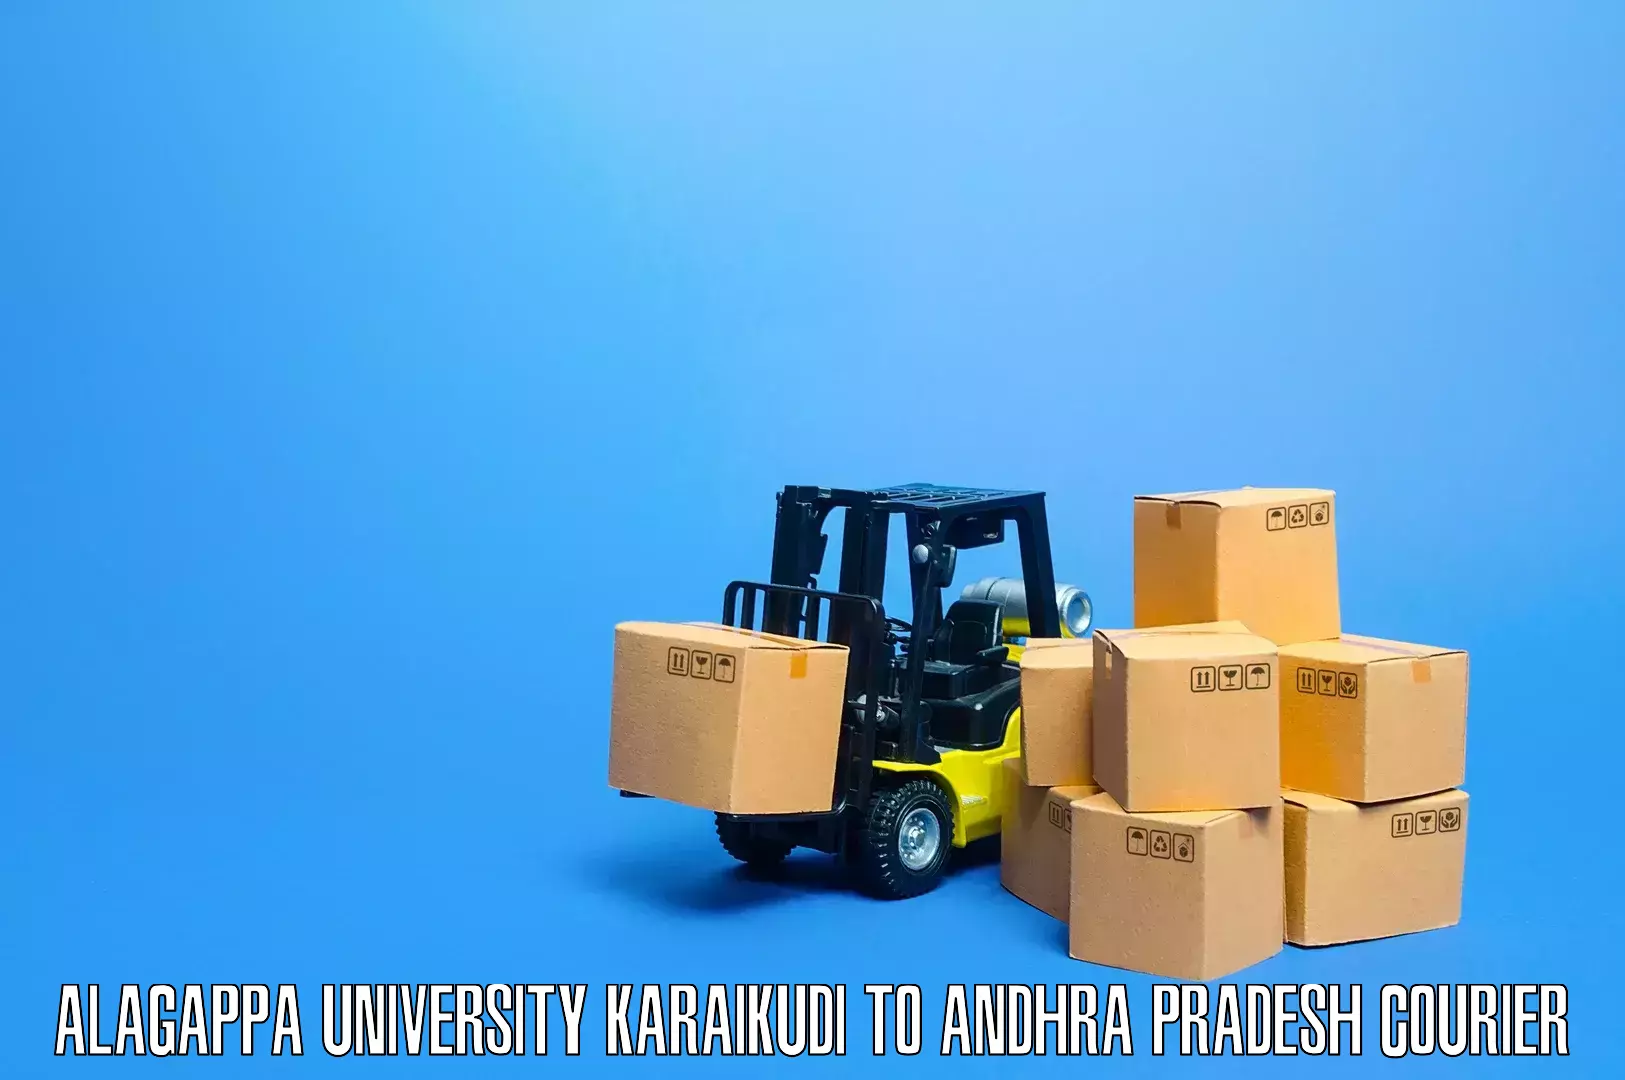 Customized furniture moving Alagappa University Karaikudi to Anantapur